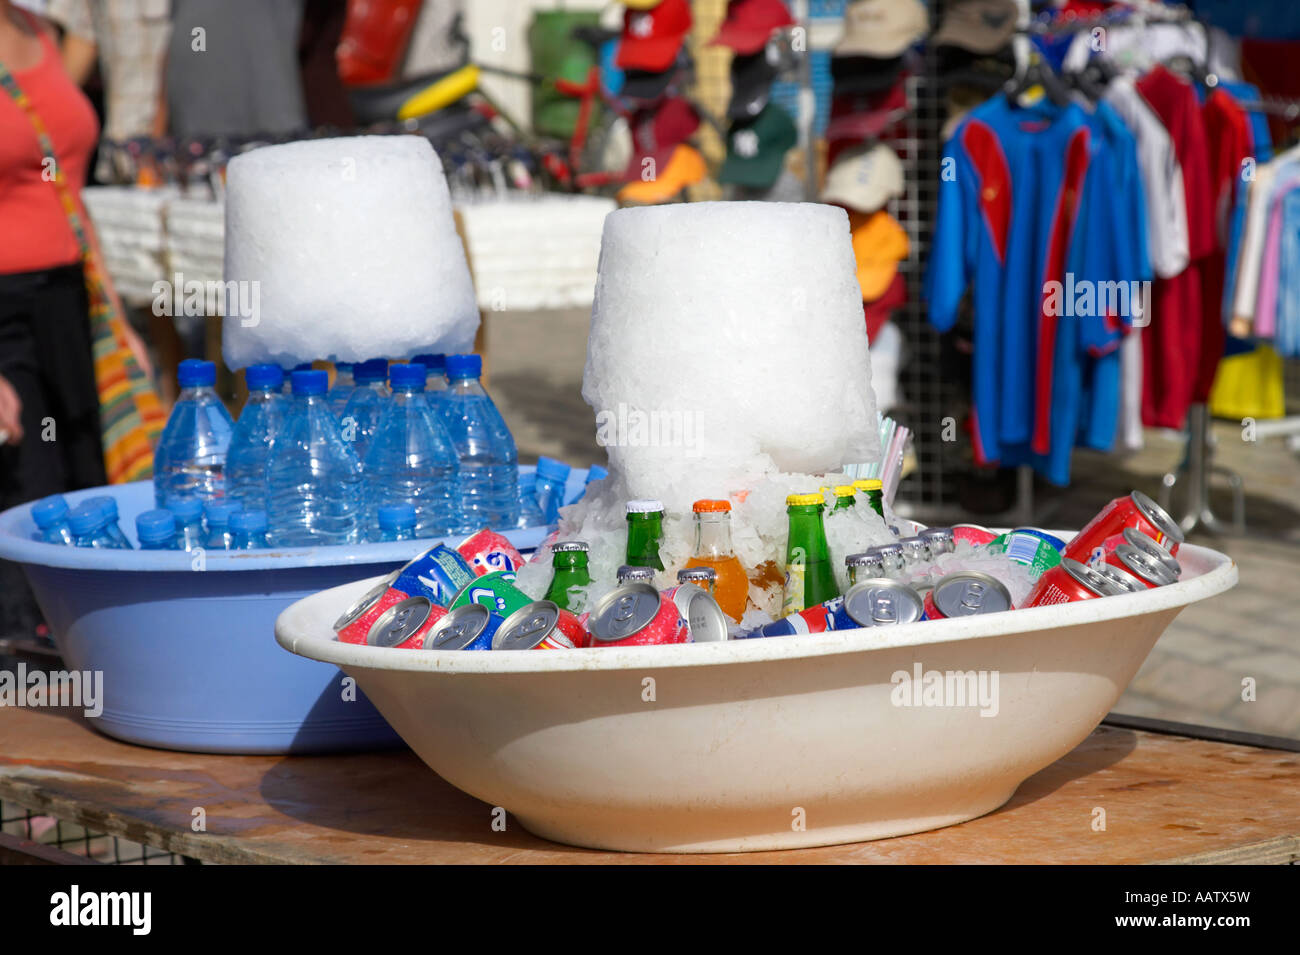 Gran cono de hielo invertido más de latas de refrescos y botellas de agua para mantenerlas frescas en el sol caliente nabeul Túnez Foto de stock